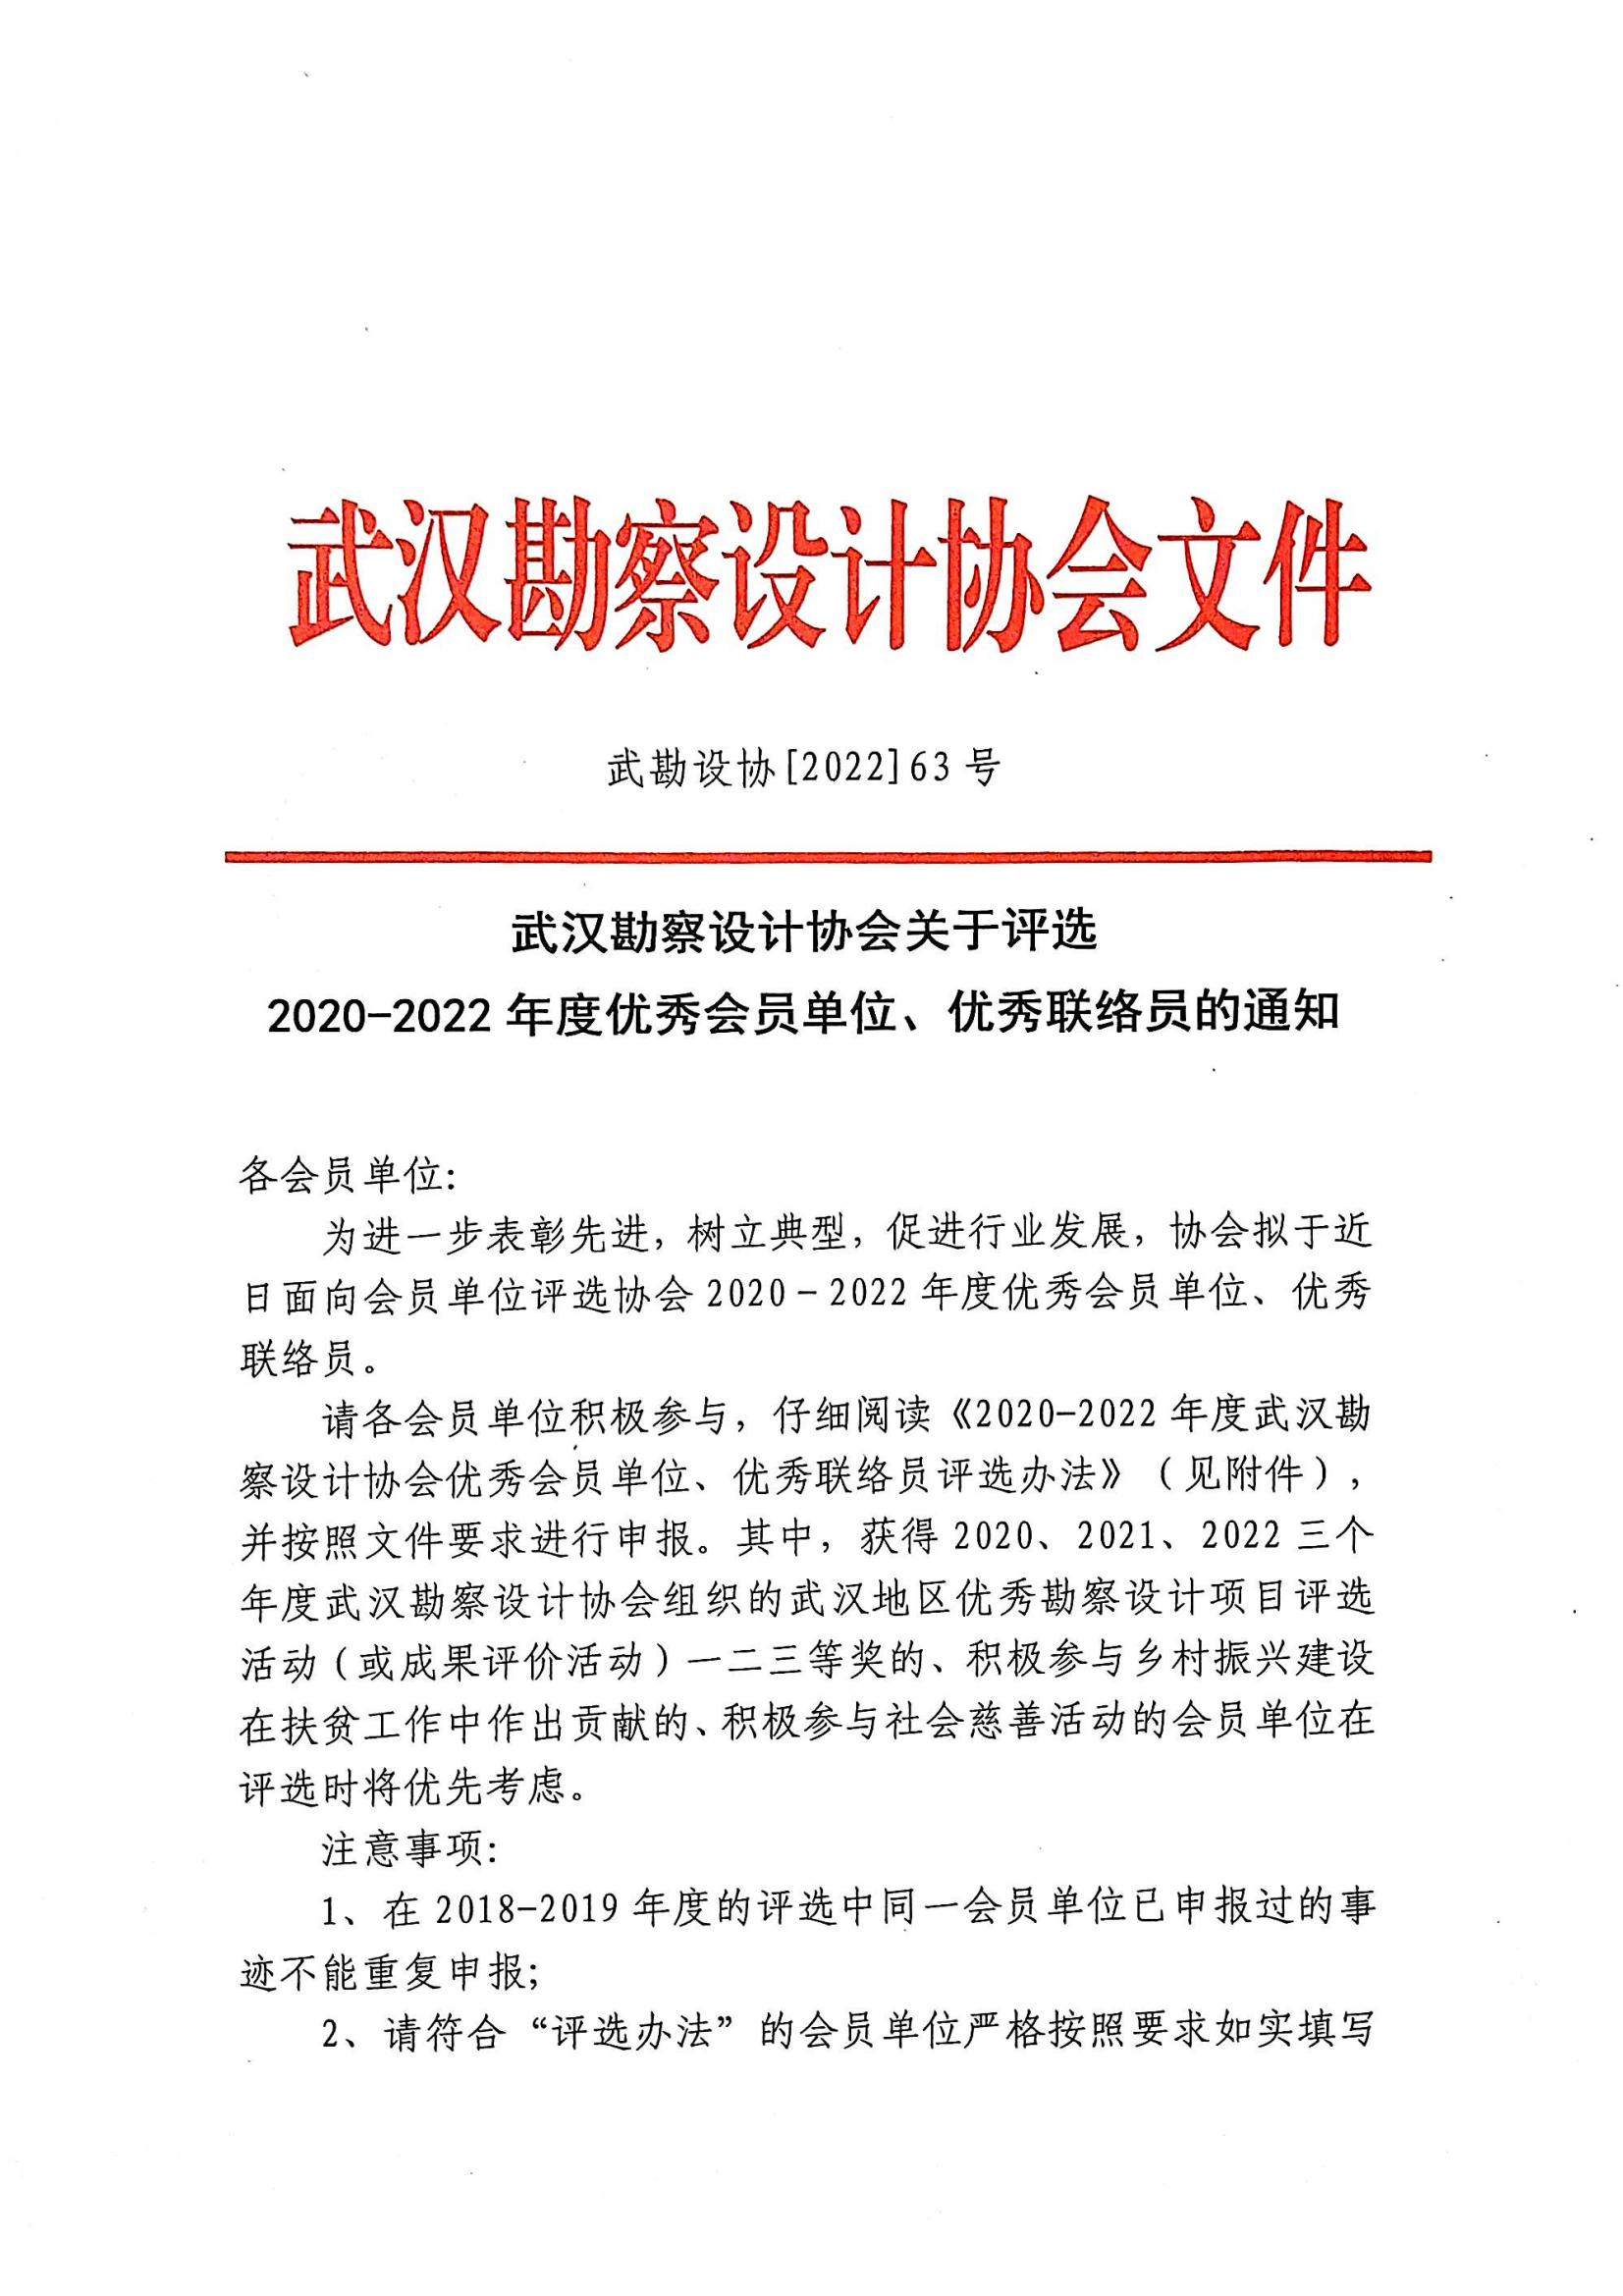 武汉勘察设计协会关于评选2020-2022年度优秀会员单位、优秀联络员的通知